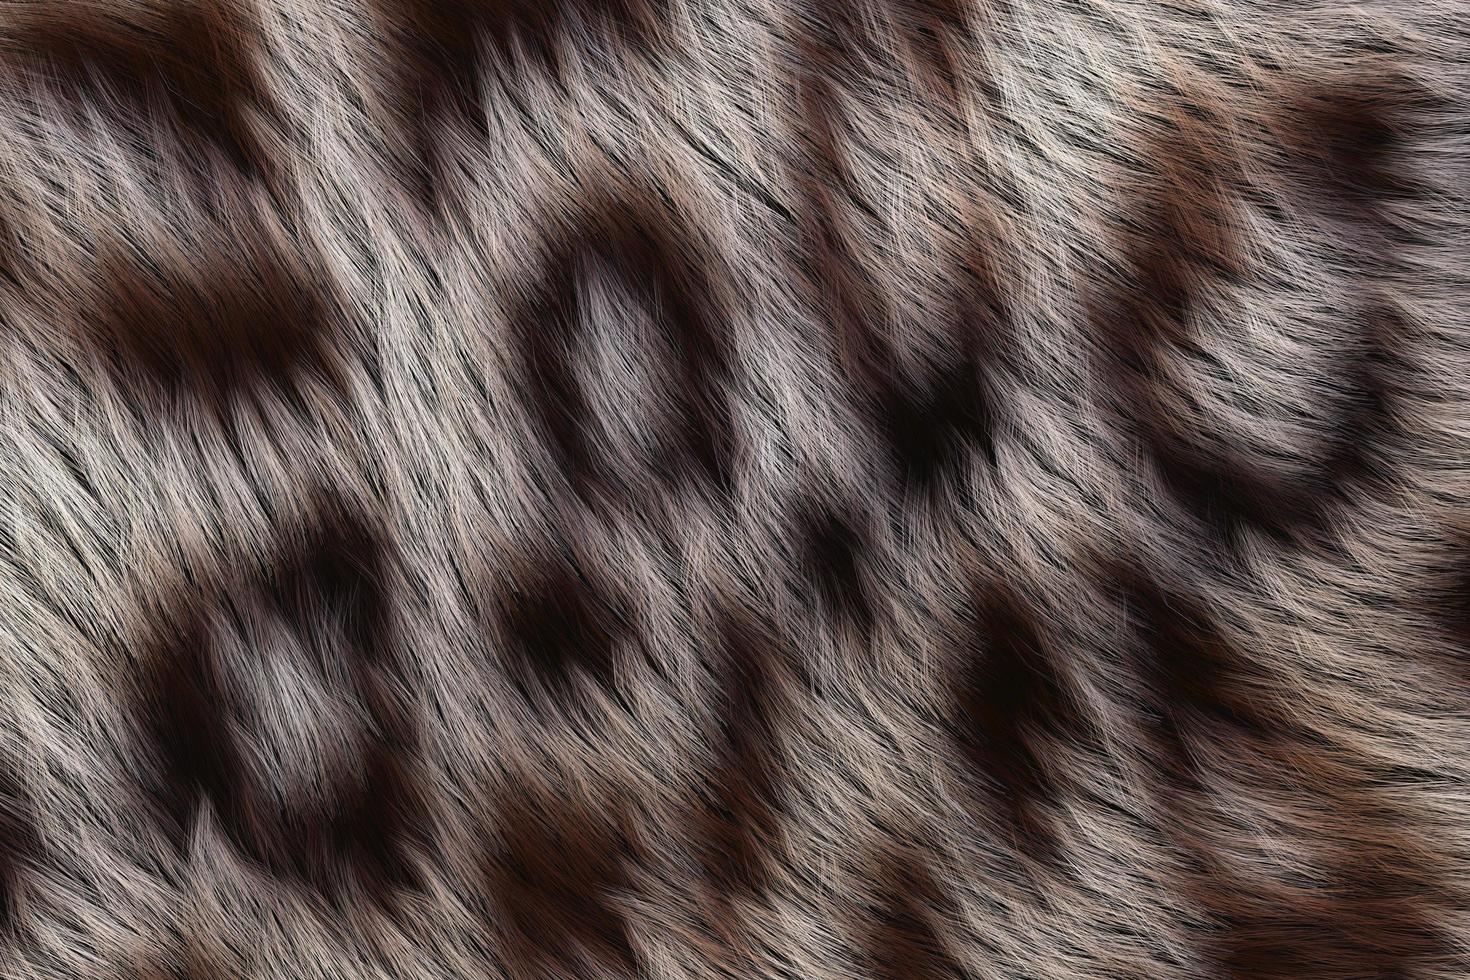 textura de macro animal selvagem. fundo abstrato de lã. renderização em 3D foto